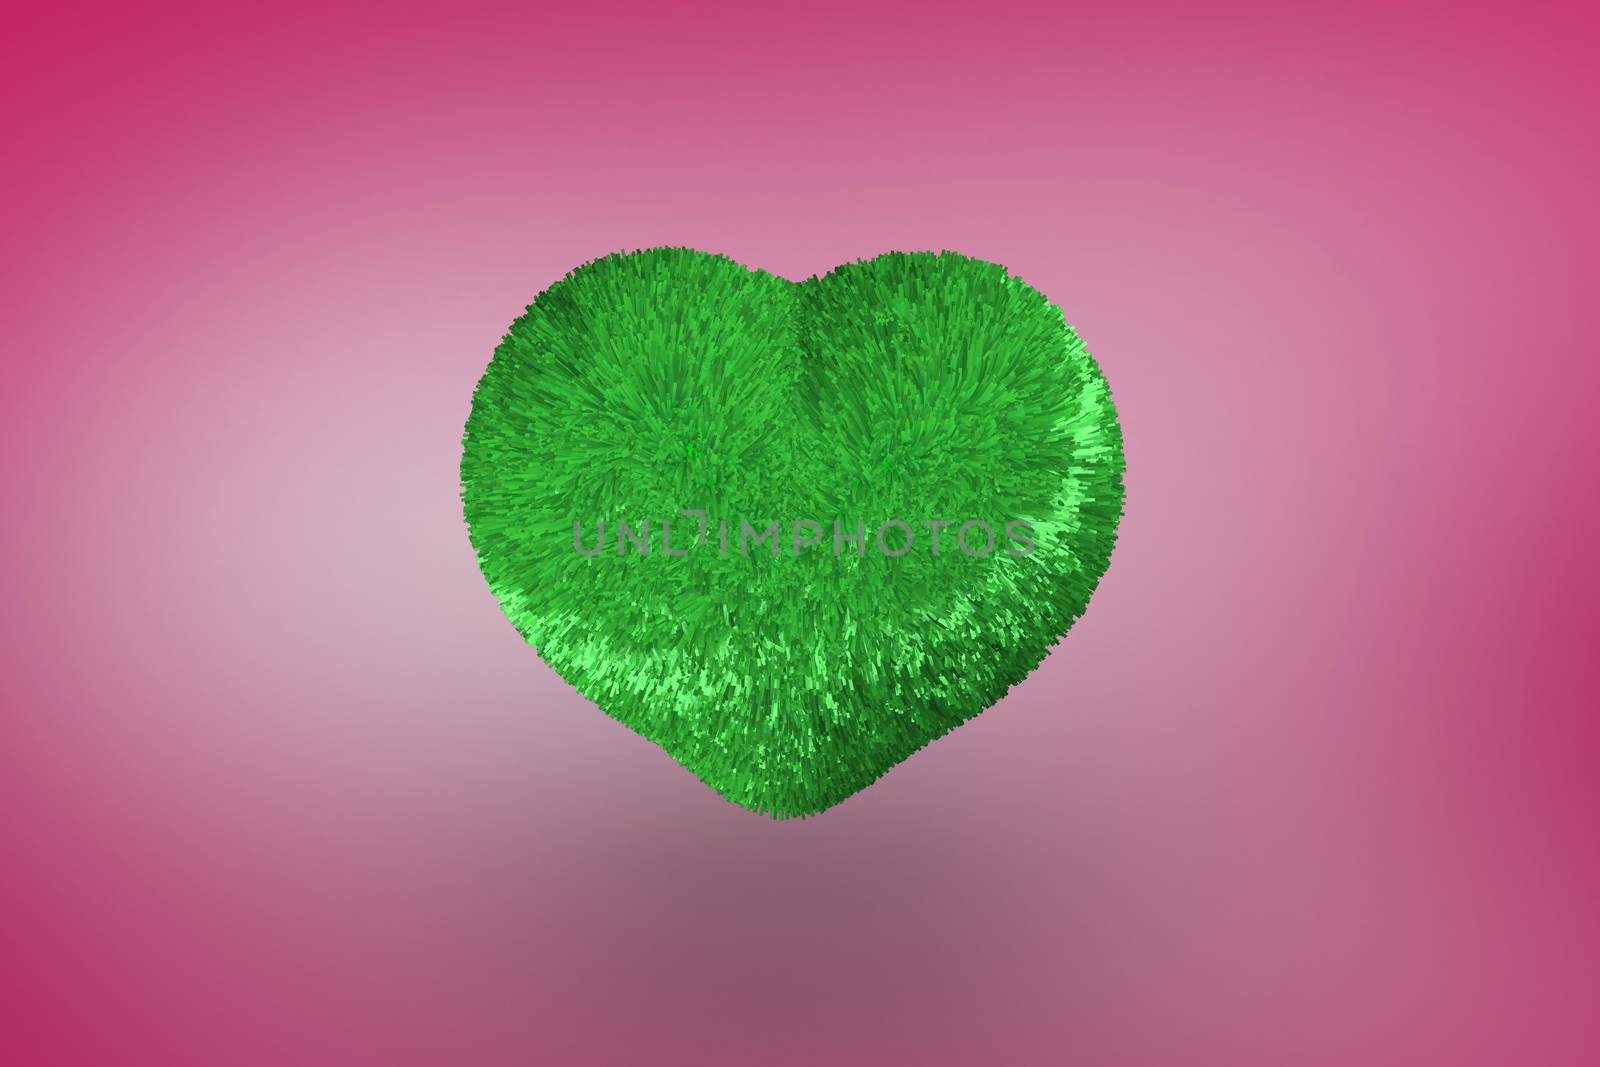 Green heart against pink vignette